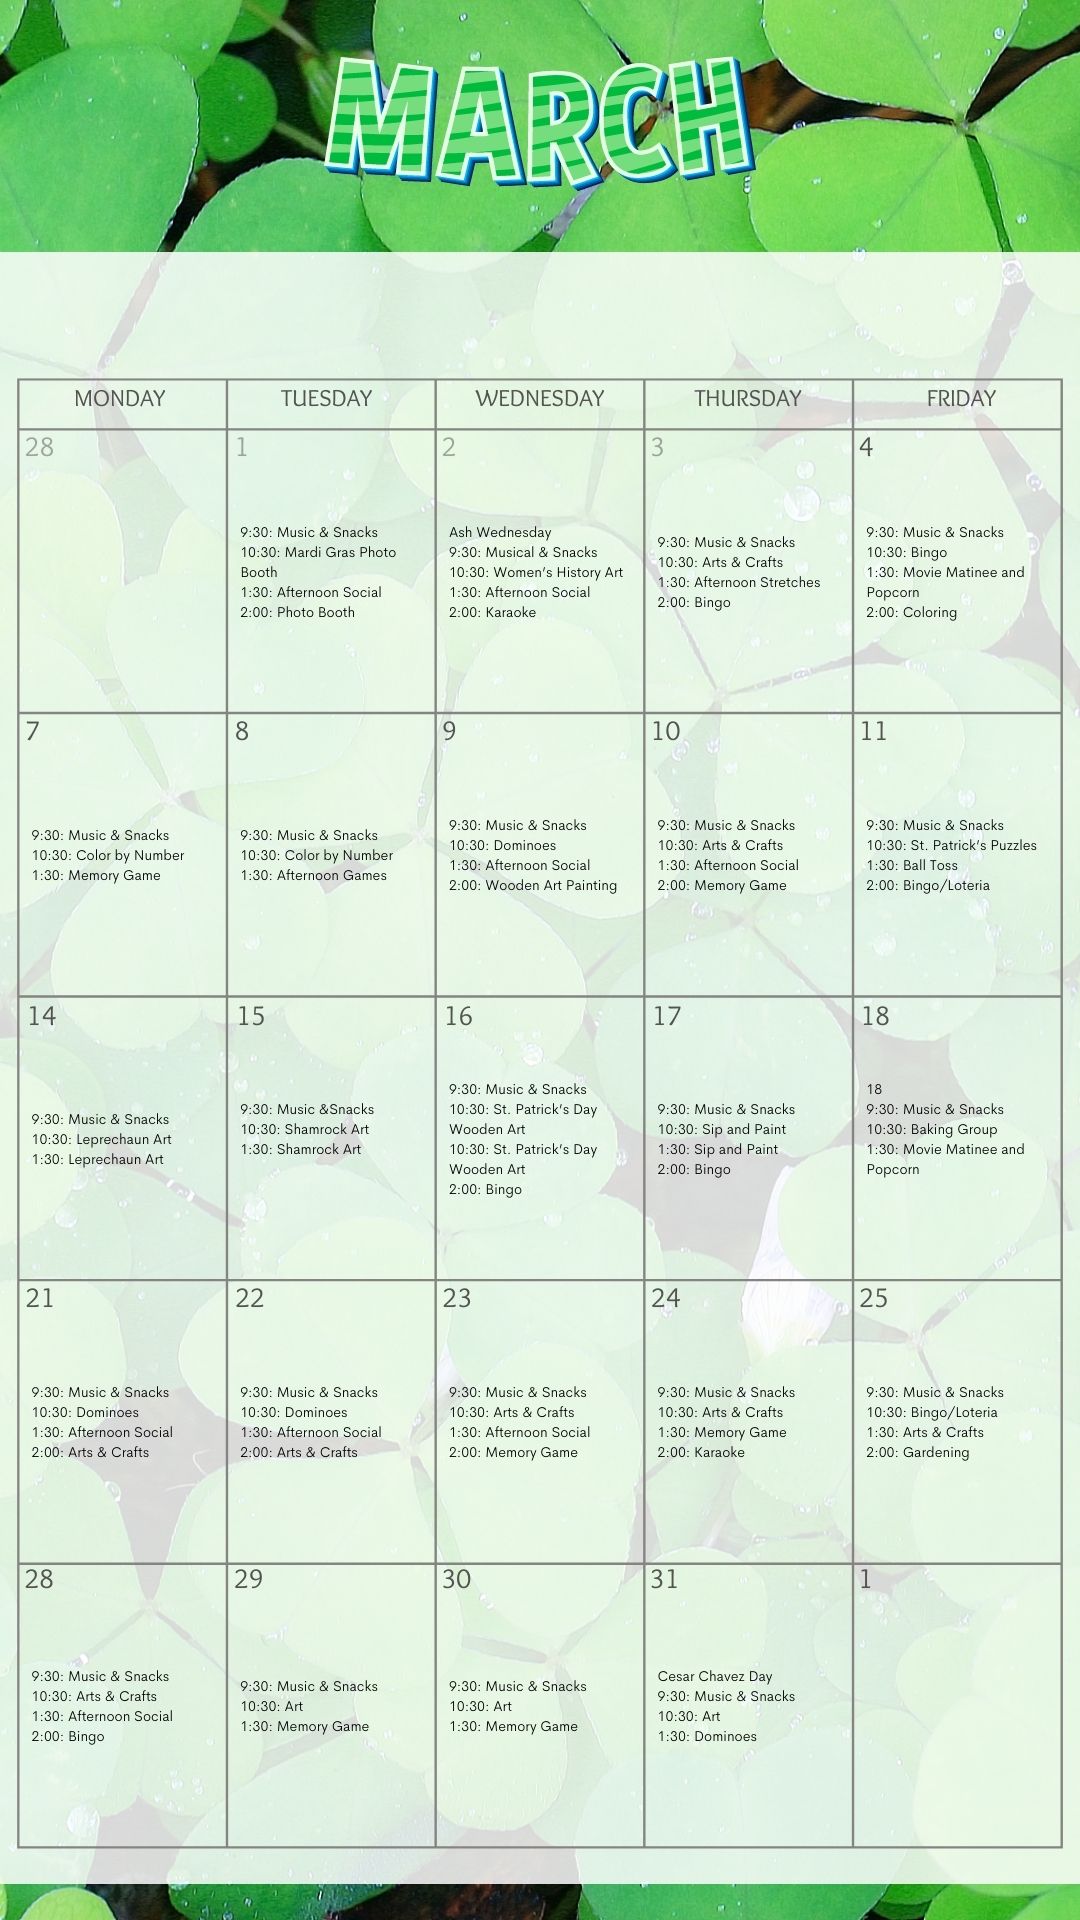 CV PACE Activities Calendar March